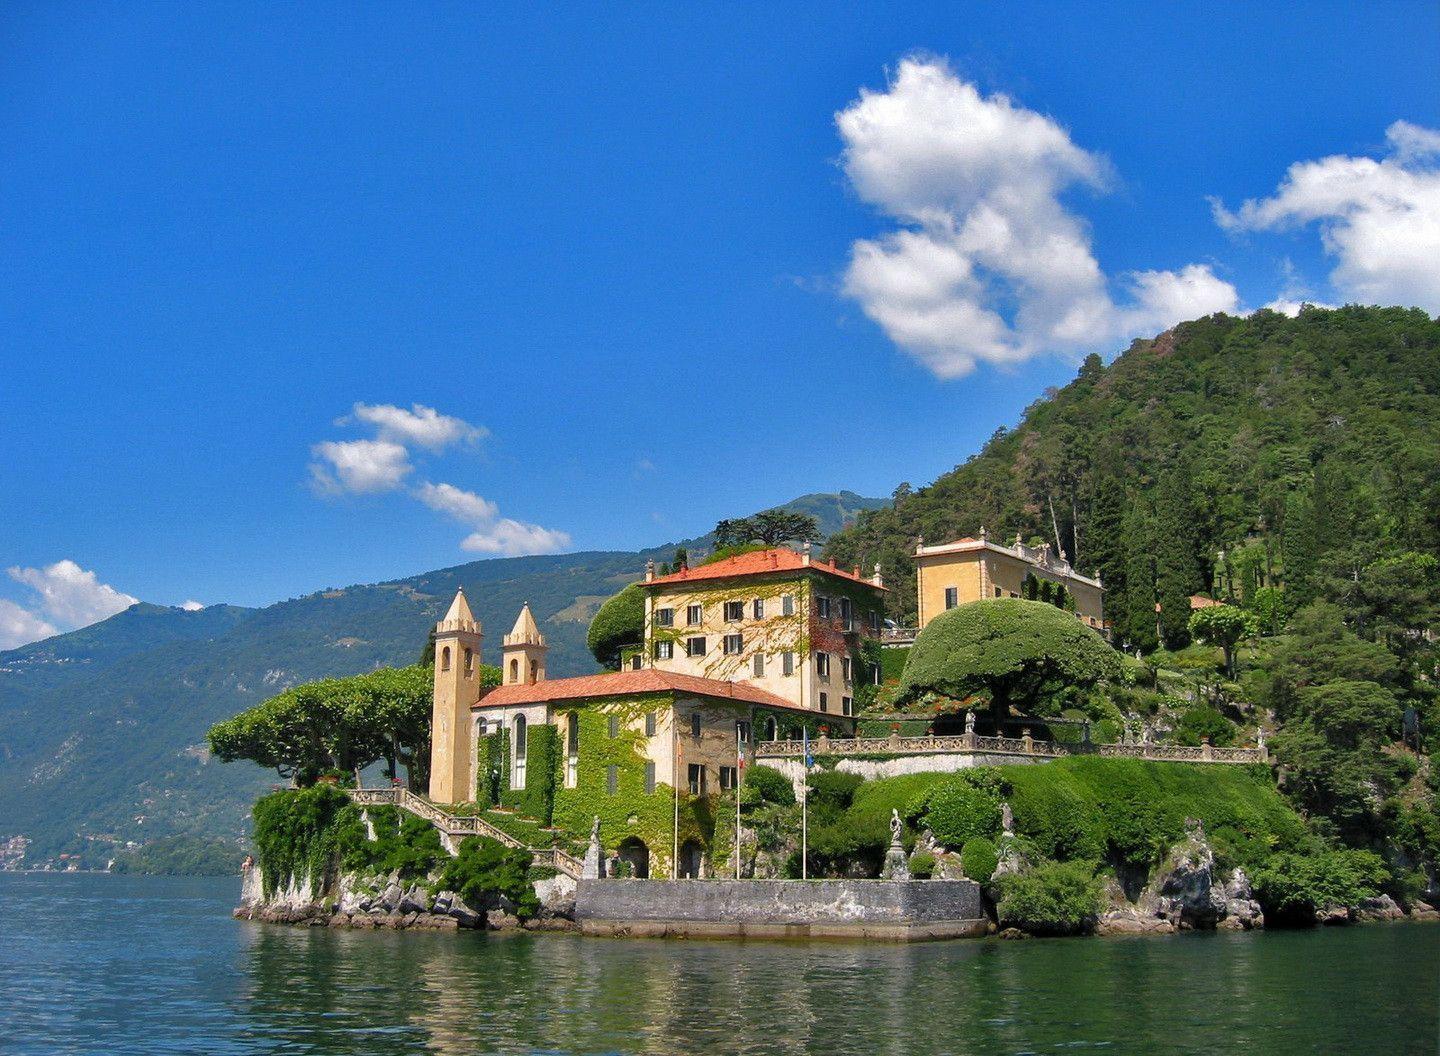 Tuscany villa italy HD wallpaper Stock Free Image